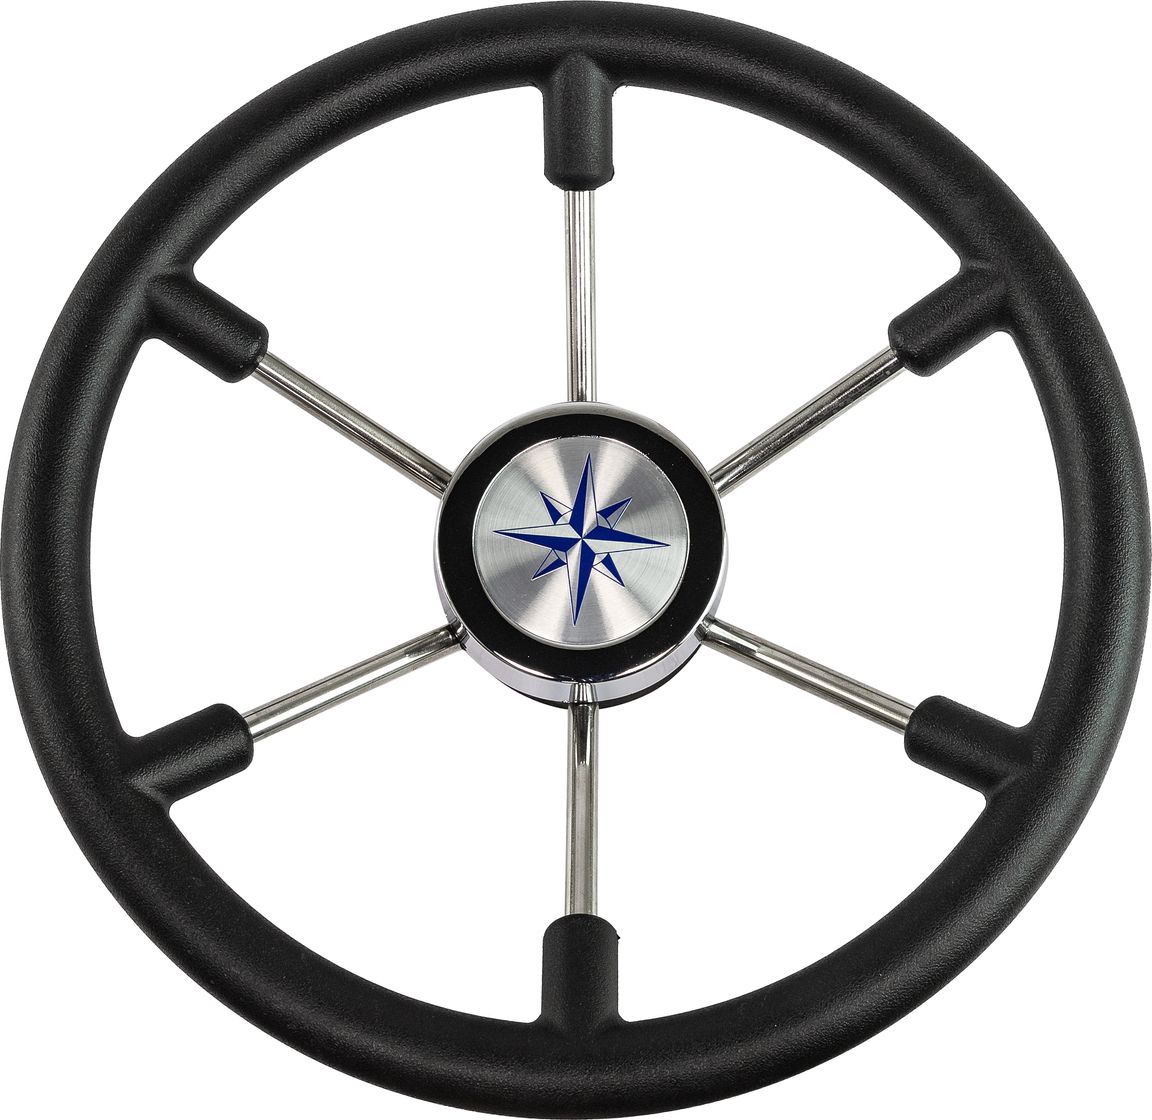 Рулевое колесо LEADER PLAST черный обод серебряные спицы д. 360 мм VN8360-01 рулевое колесо leader plast обод серебряные спицы д 360 мм vn8360 01